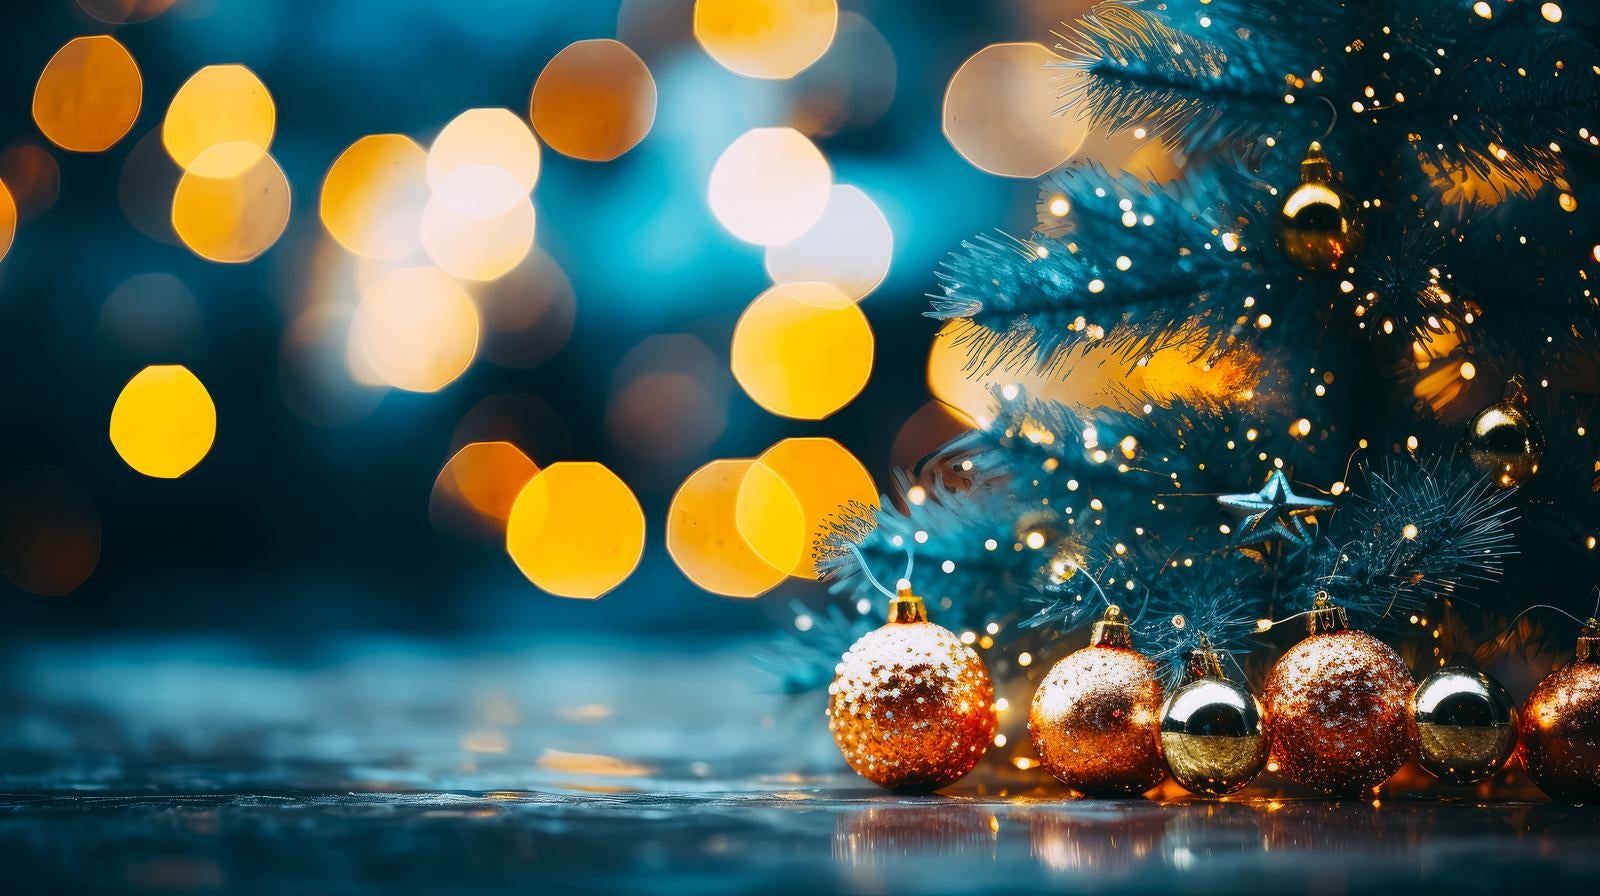 「クリスマスツリーを輝かせるイルミネーション」の写真